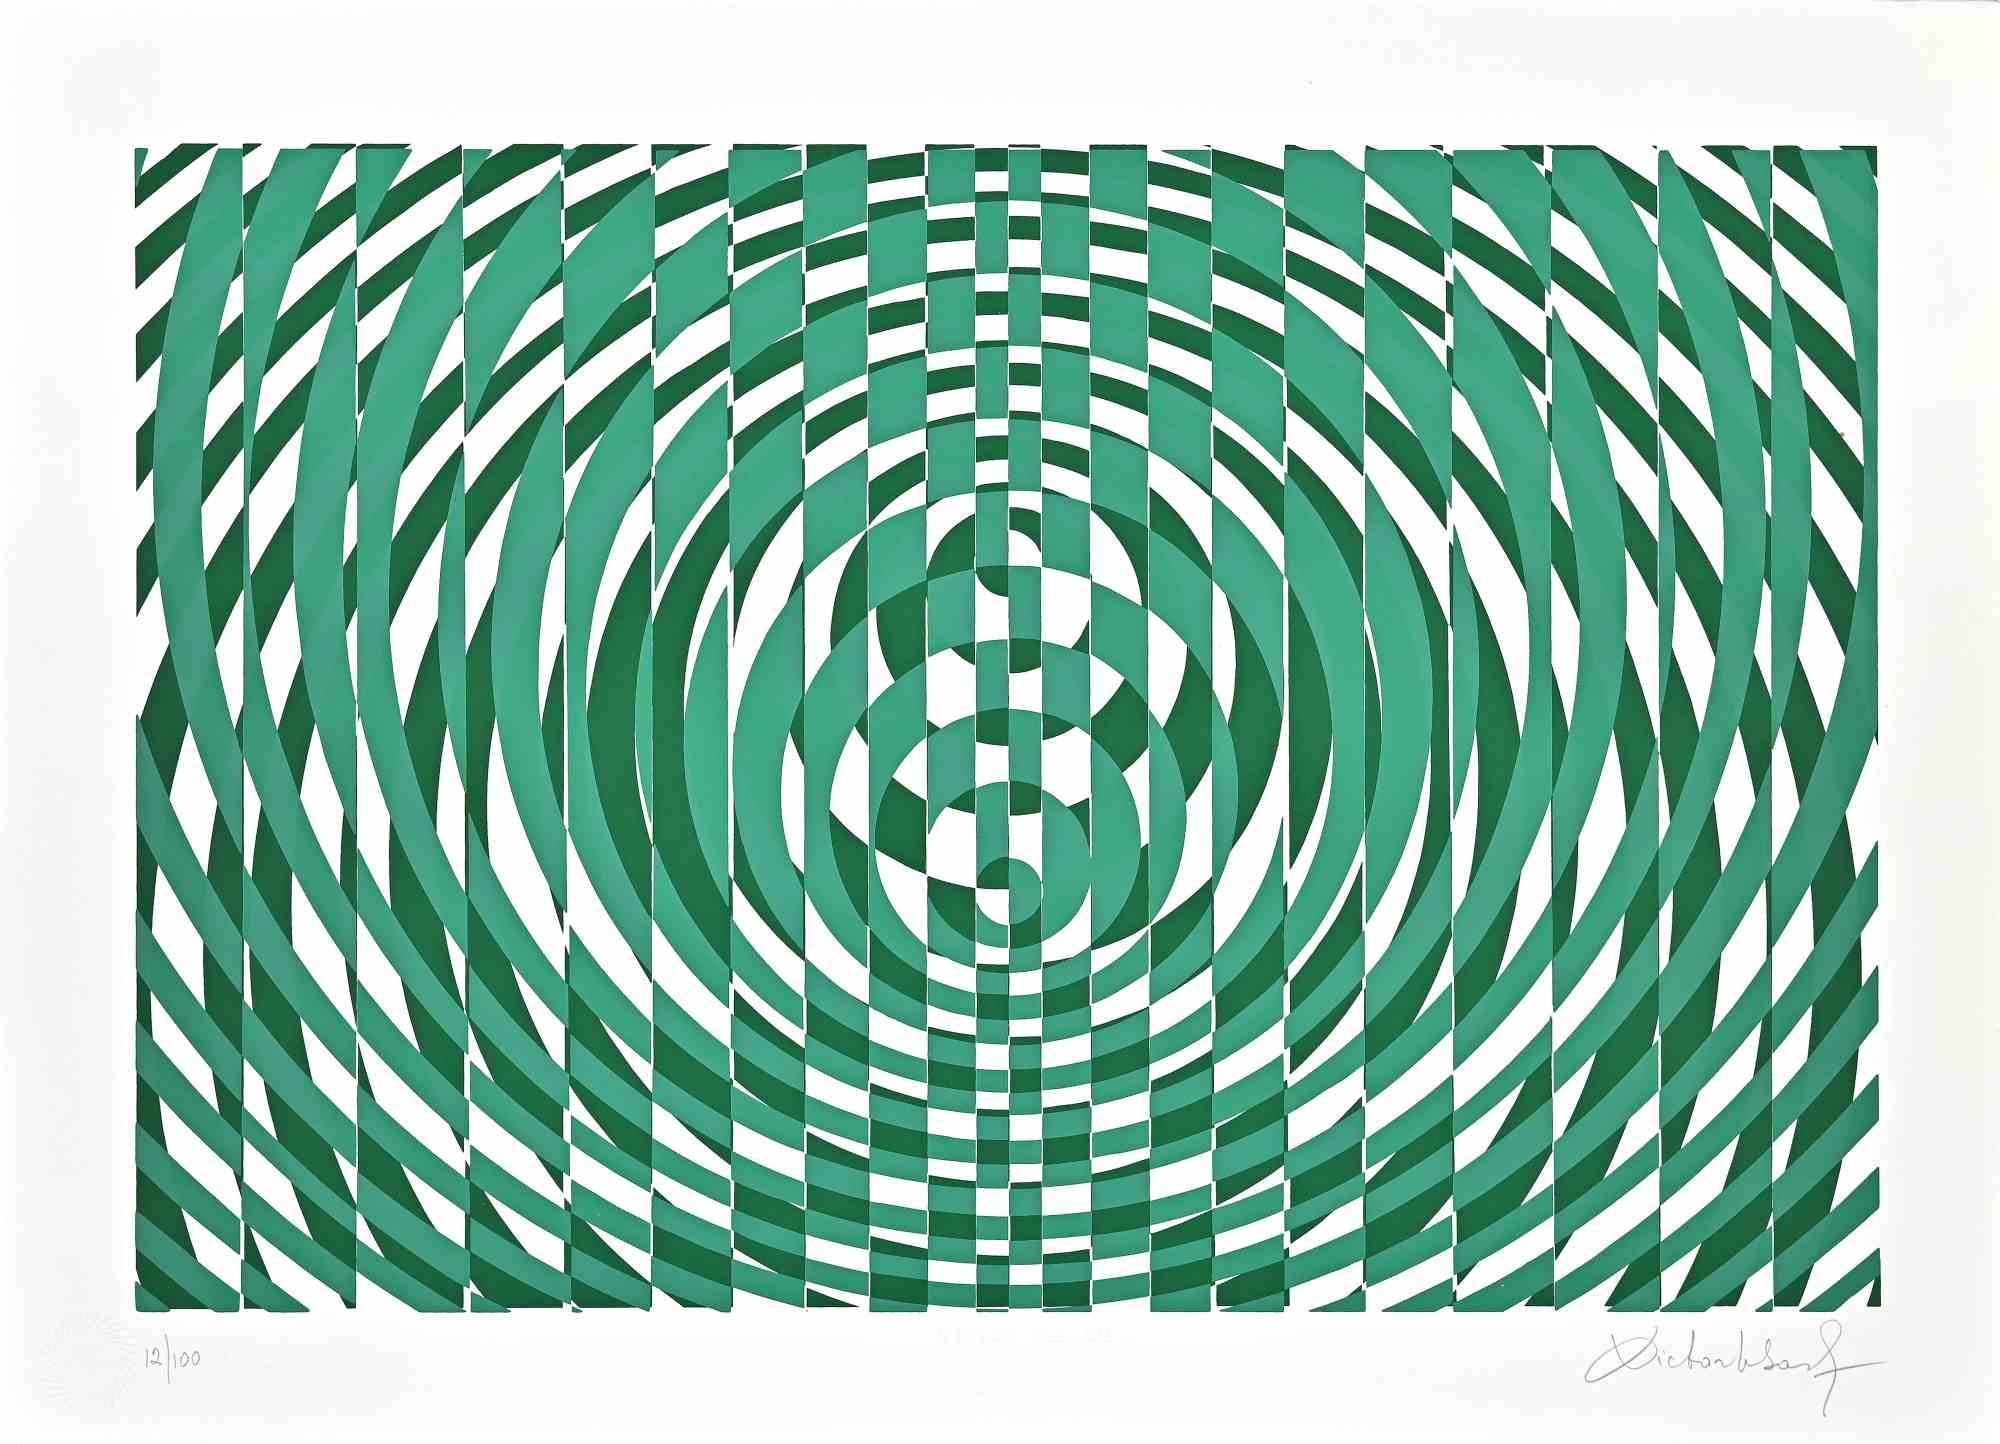 Composition abstraite verte est une sérigraphie sur papier réalisée par Victor Debach dans les années 1970.

Édition limitée à 100 exemplaires numérotés et signés par l'artiste au crayon dans la marge inférieure. 

Edition 12/100

Bon état sur